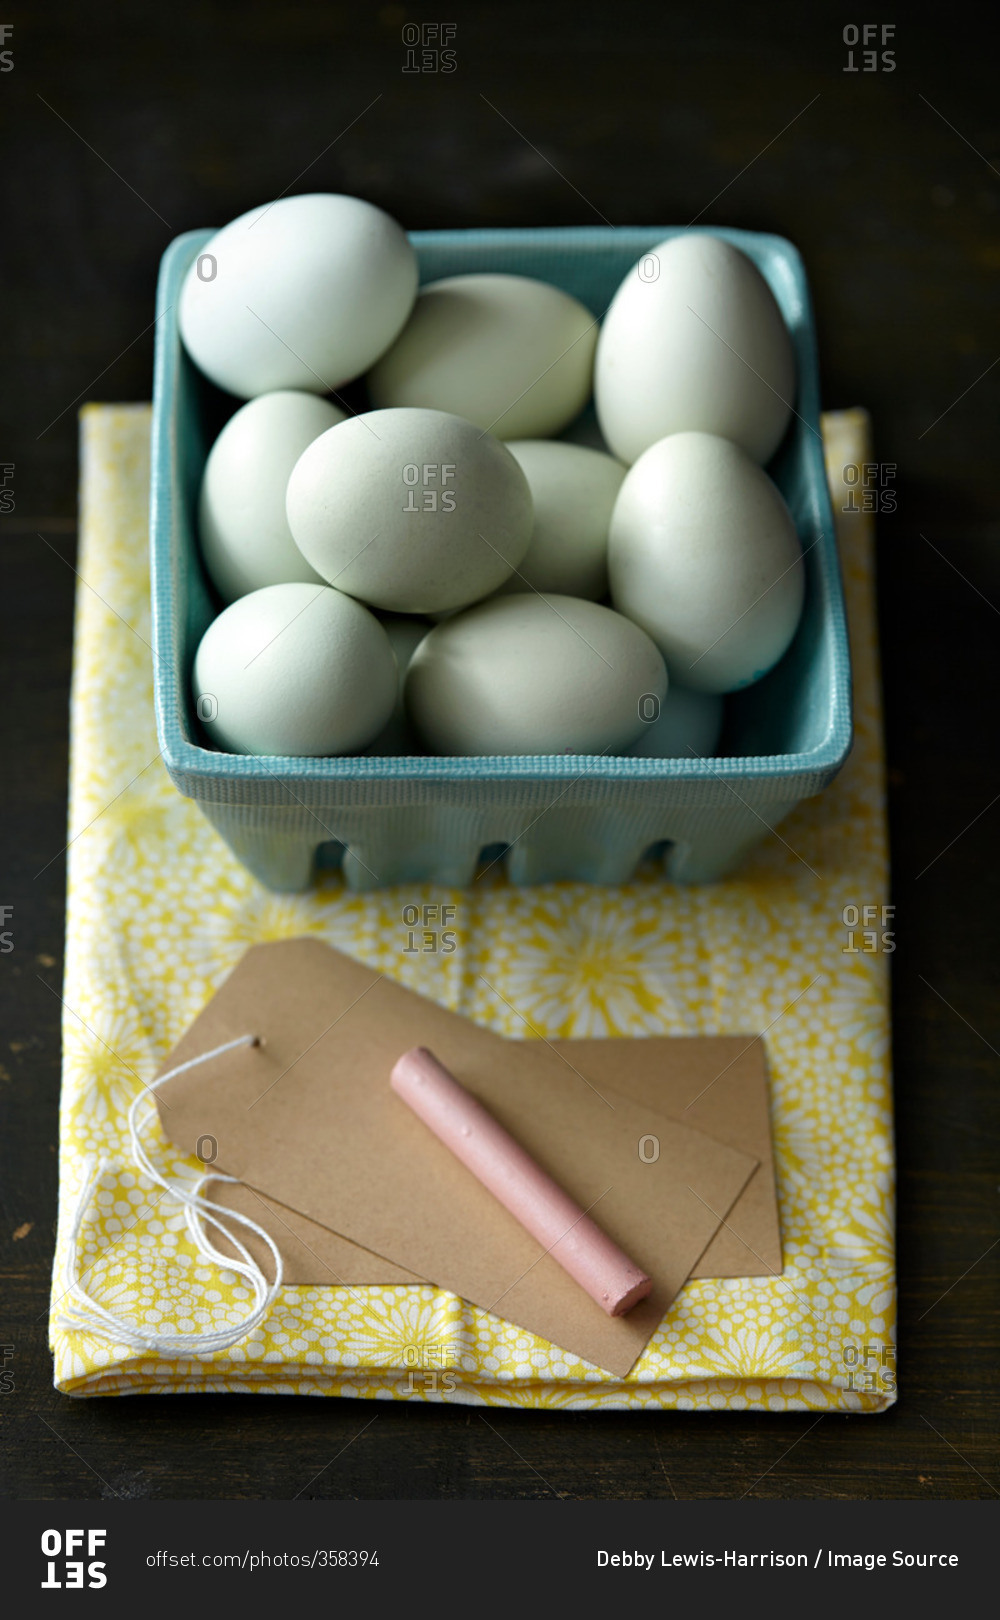 Chicken eggs, chalk, tag, kitchen towel